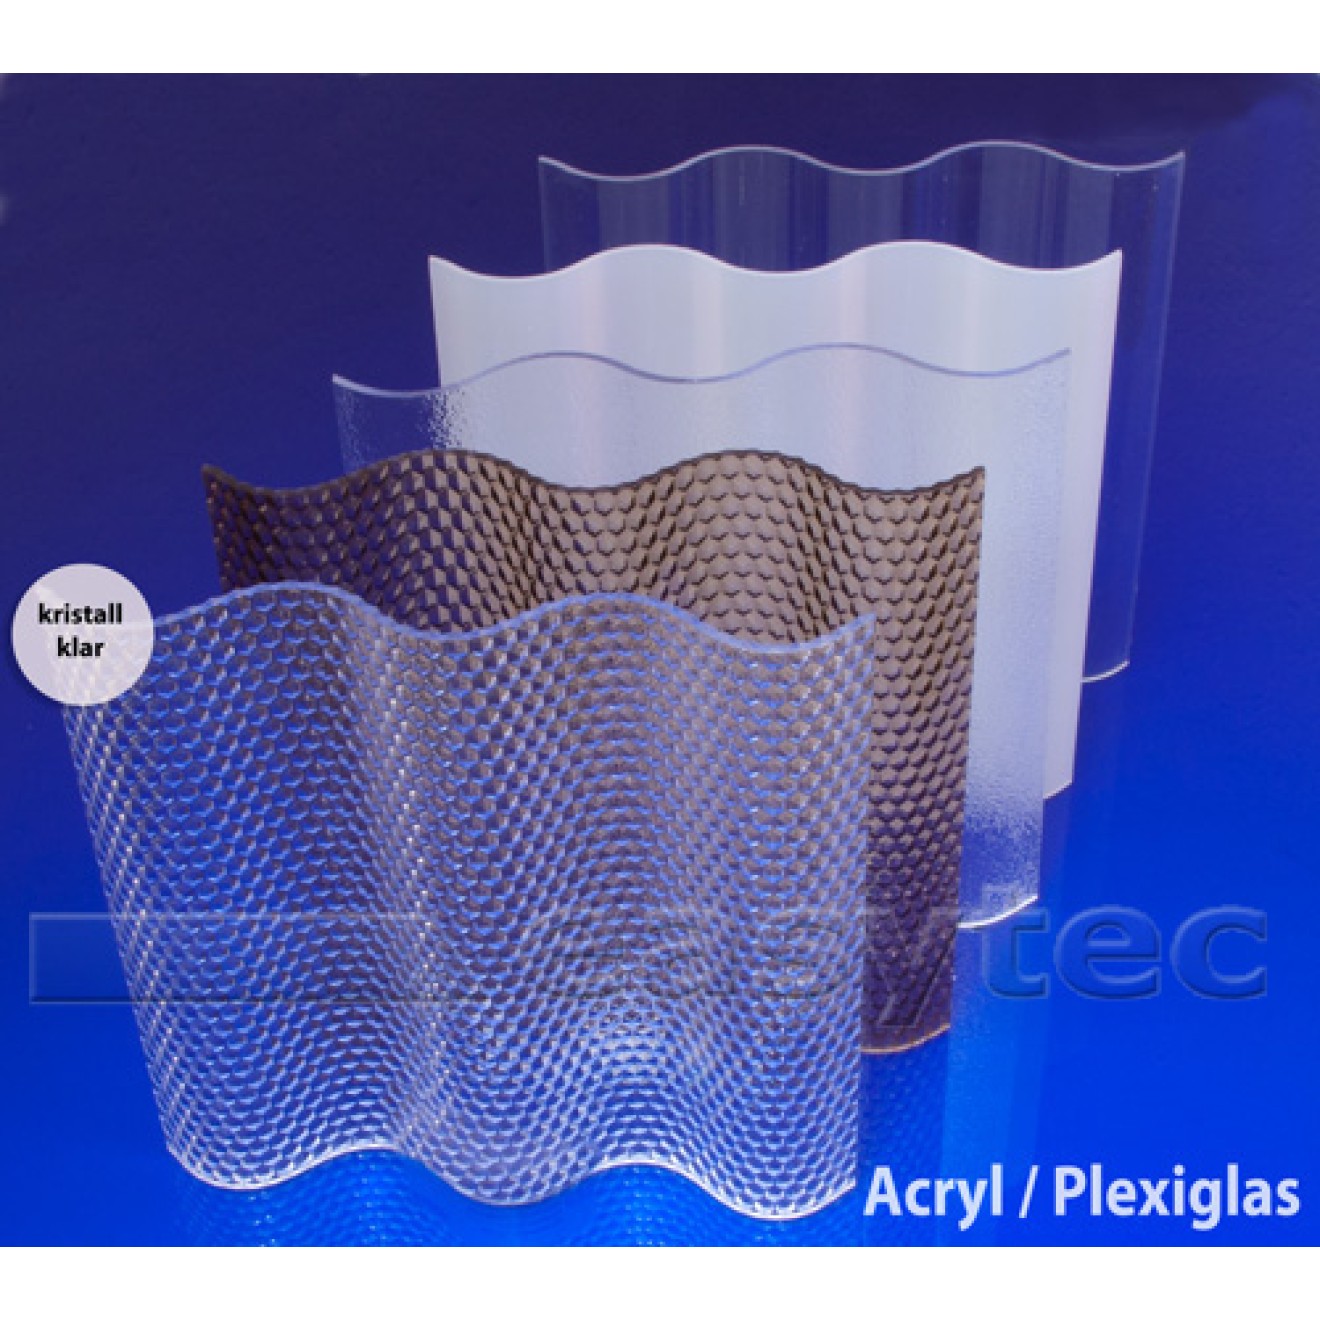 Acryl Lichtplatten 18/76 mit Wabenstruktur kristallklar